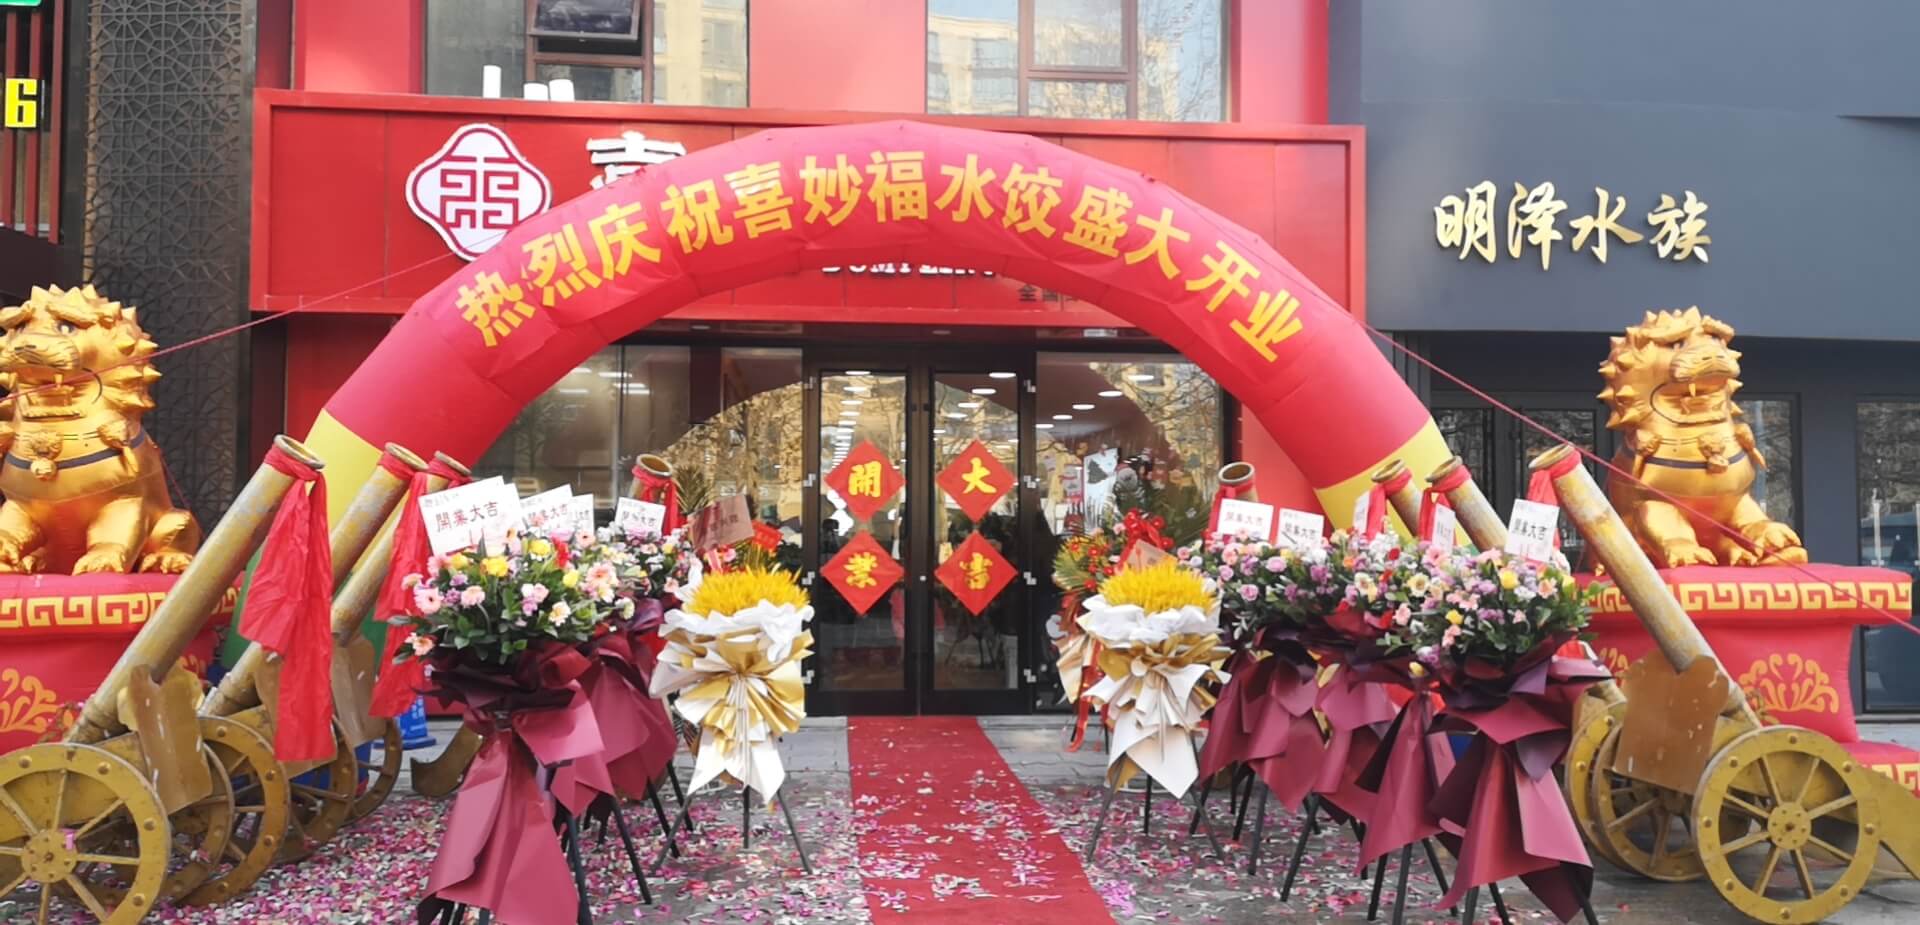 喜妙福水饺，我们是认真的--->青岛胶州店盛大开业